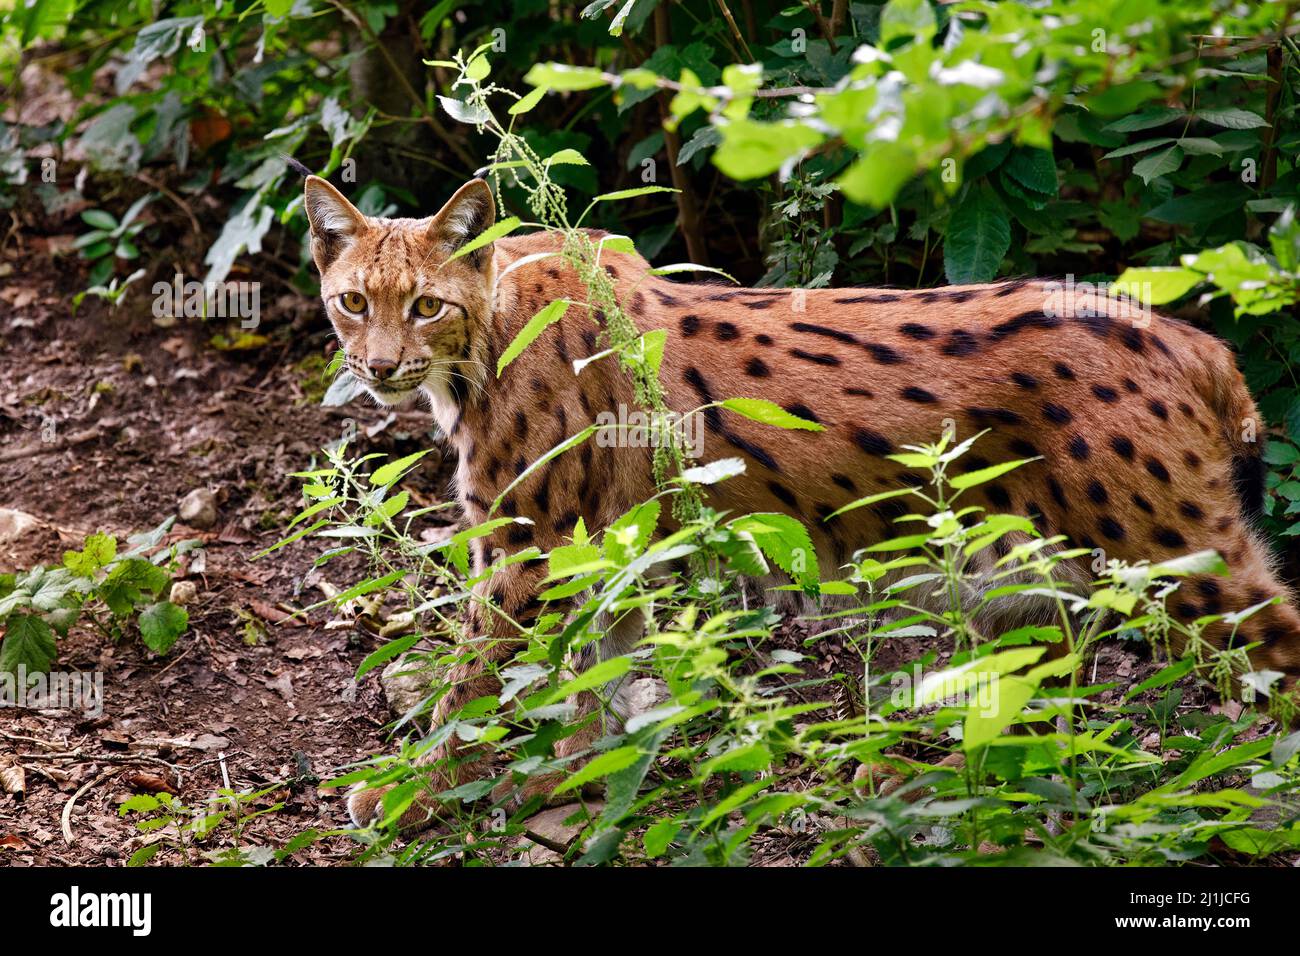 Carpathian lynx - Lynx lynx carpathicus Stock Photo